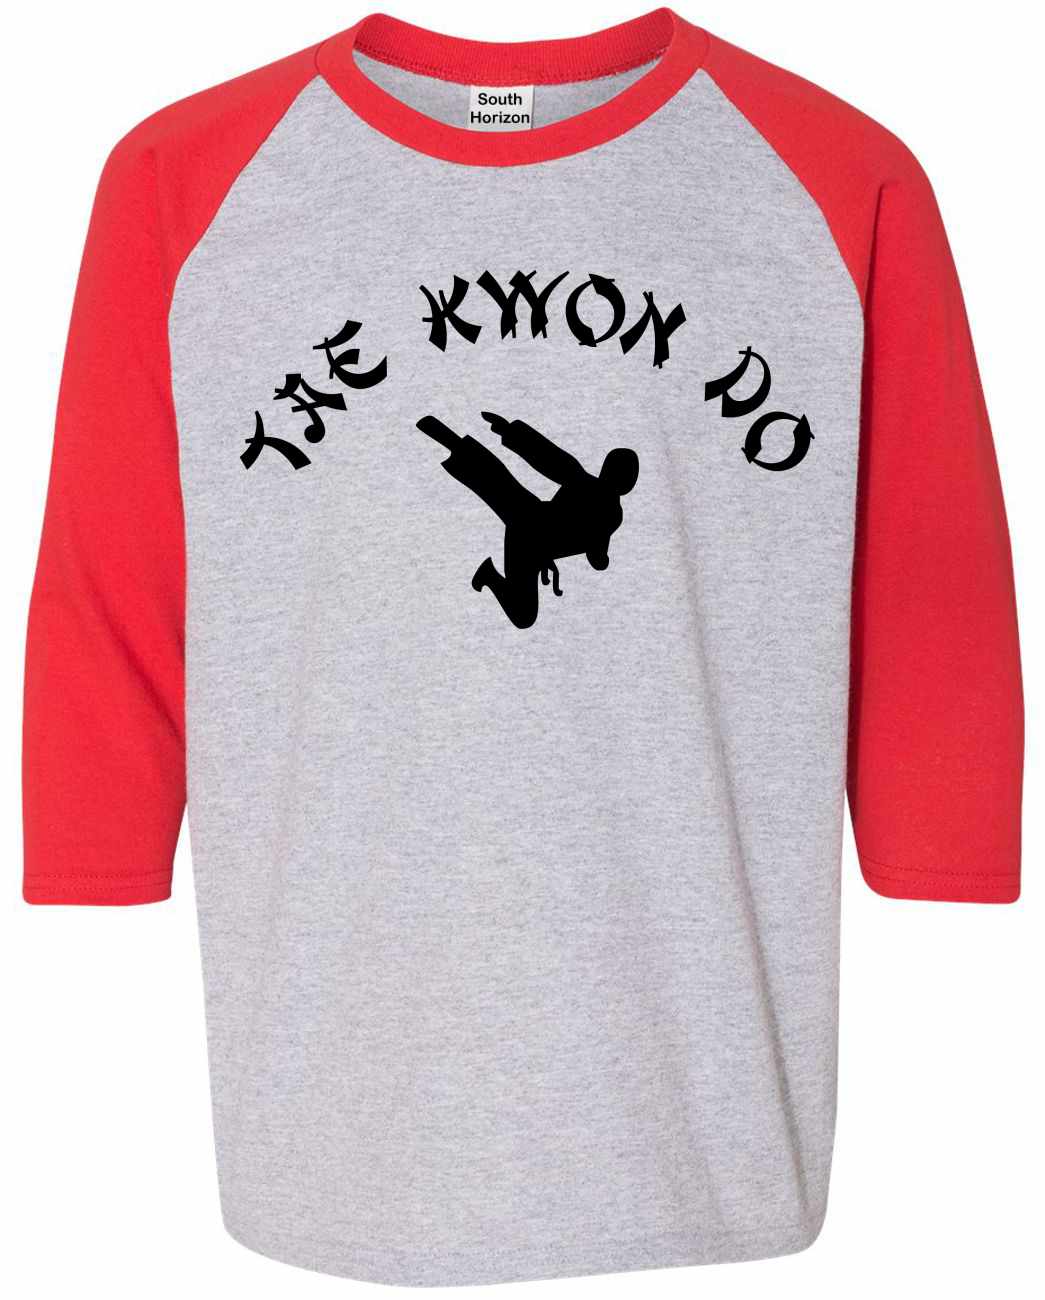 TAE KWON DO on Youth Baseball Shirt (#748-212)